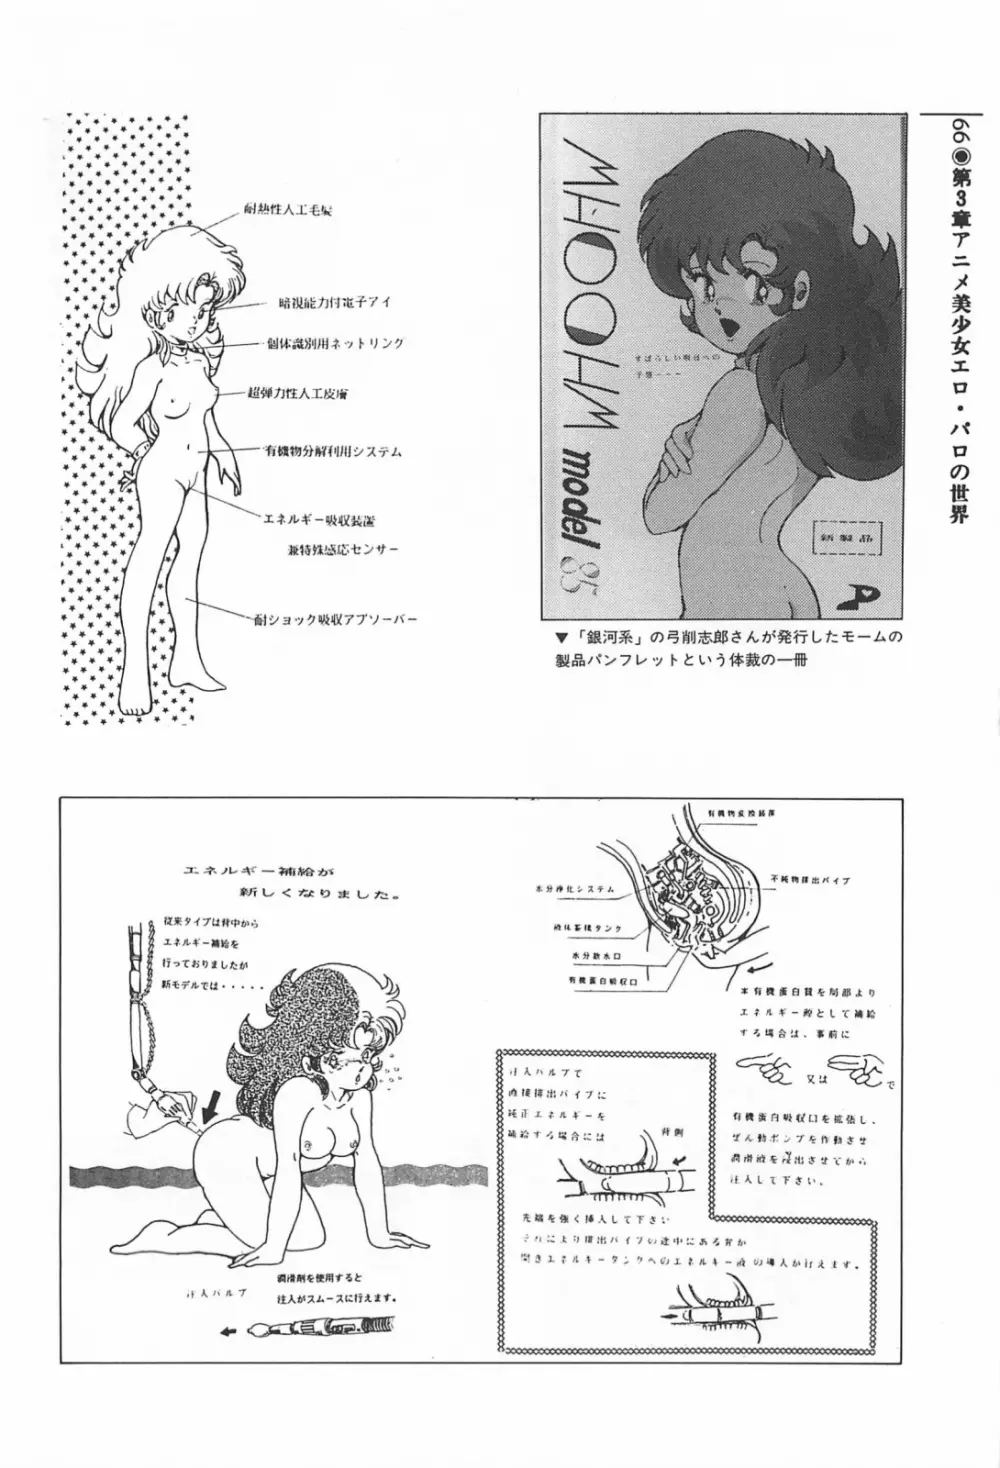 美少女症候群 1985 66ページ